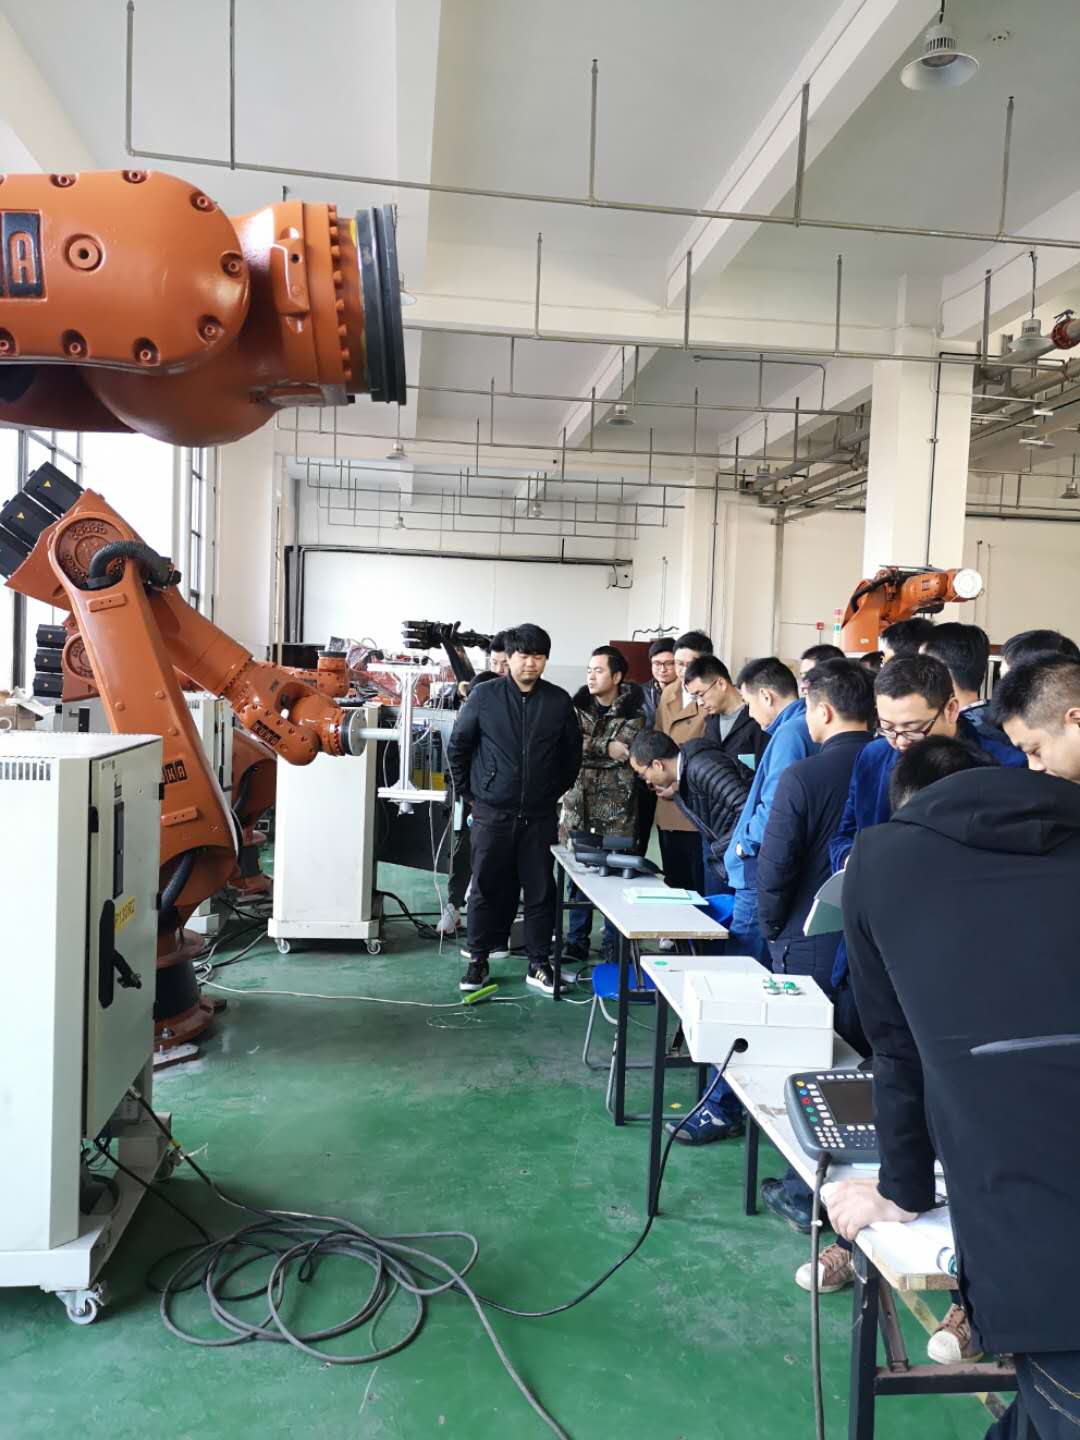 自动化技术 技能培训 机器人编程培训 电气工程师 PLC培训 机器人操作培训4